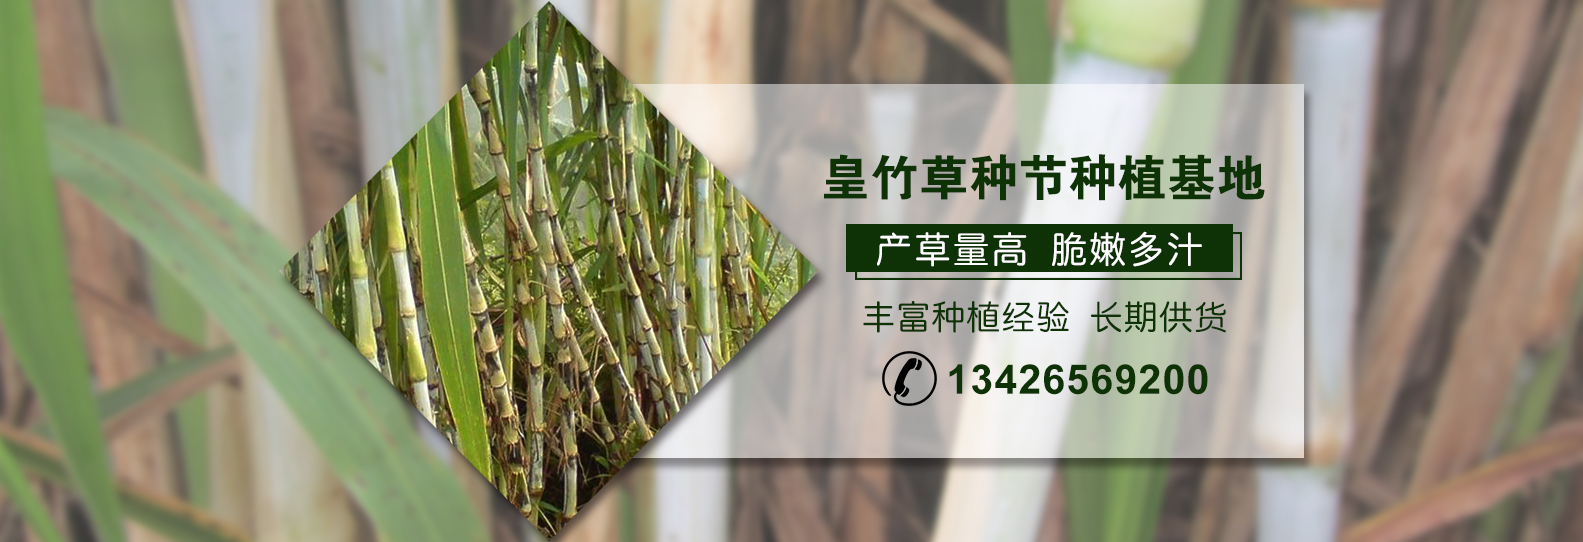 种植皇竹草具有的四个特点